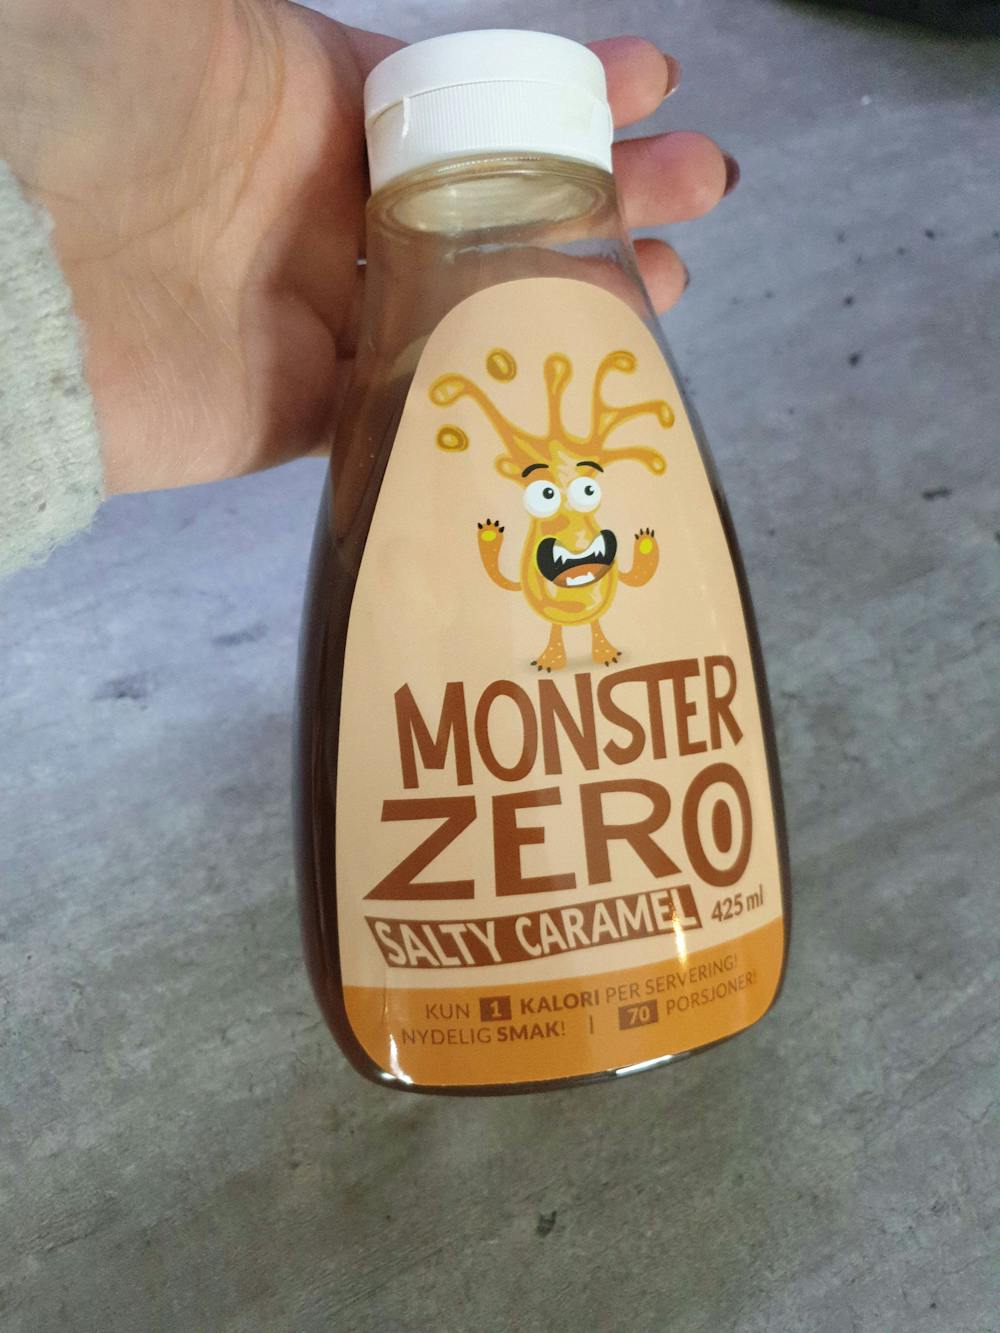 Monster zero salty caramel, Monster snacks